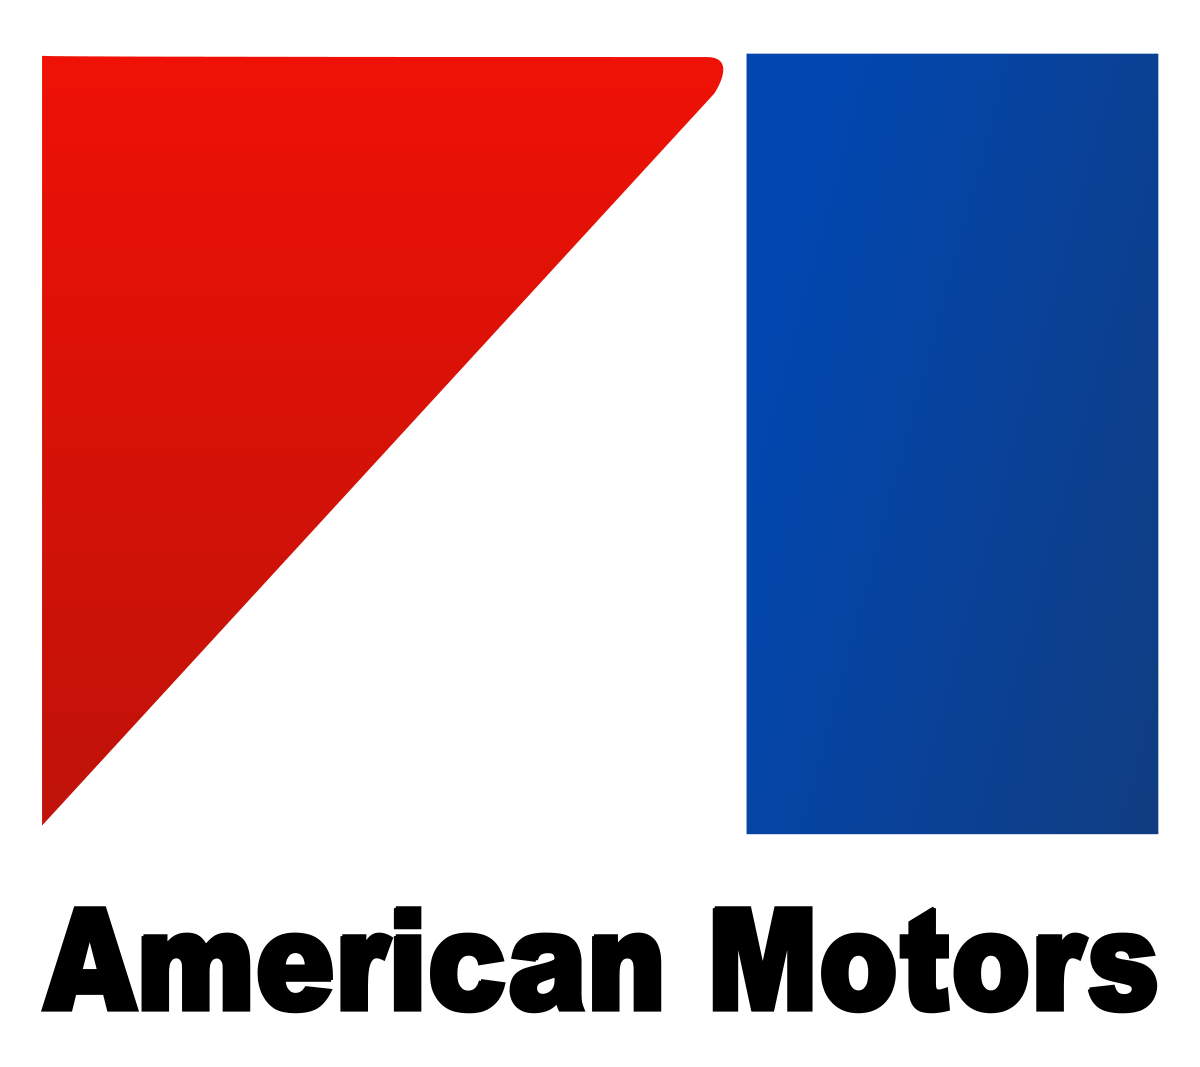 Old General Motors Logo - American Motors Corporation